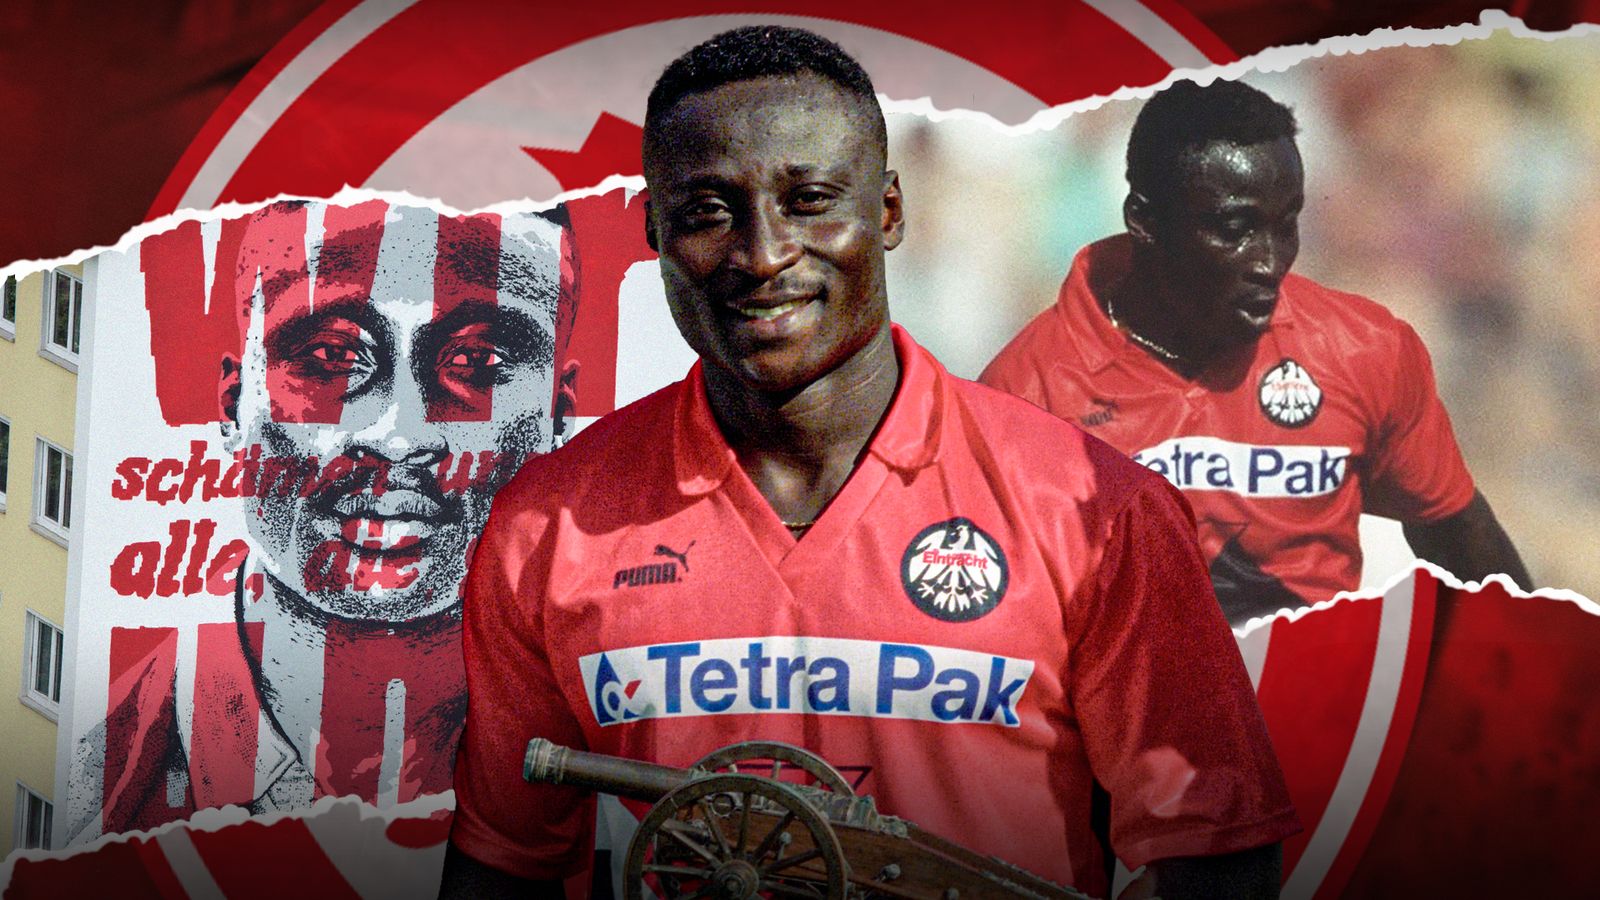 ข้อความต่อต้านการเหยียดเชื้อชาติของ Tony Yeboah ขยายความด้วยจิตรกรรมฝาผนังในแฟรงก์เฟิร์ตและยังคงมีความเกี่ยวข้องในเมืองที่เขาเป็นตำนาน |  ข่าวฟุตบอล